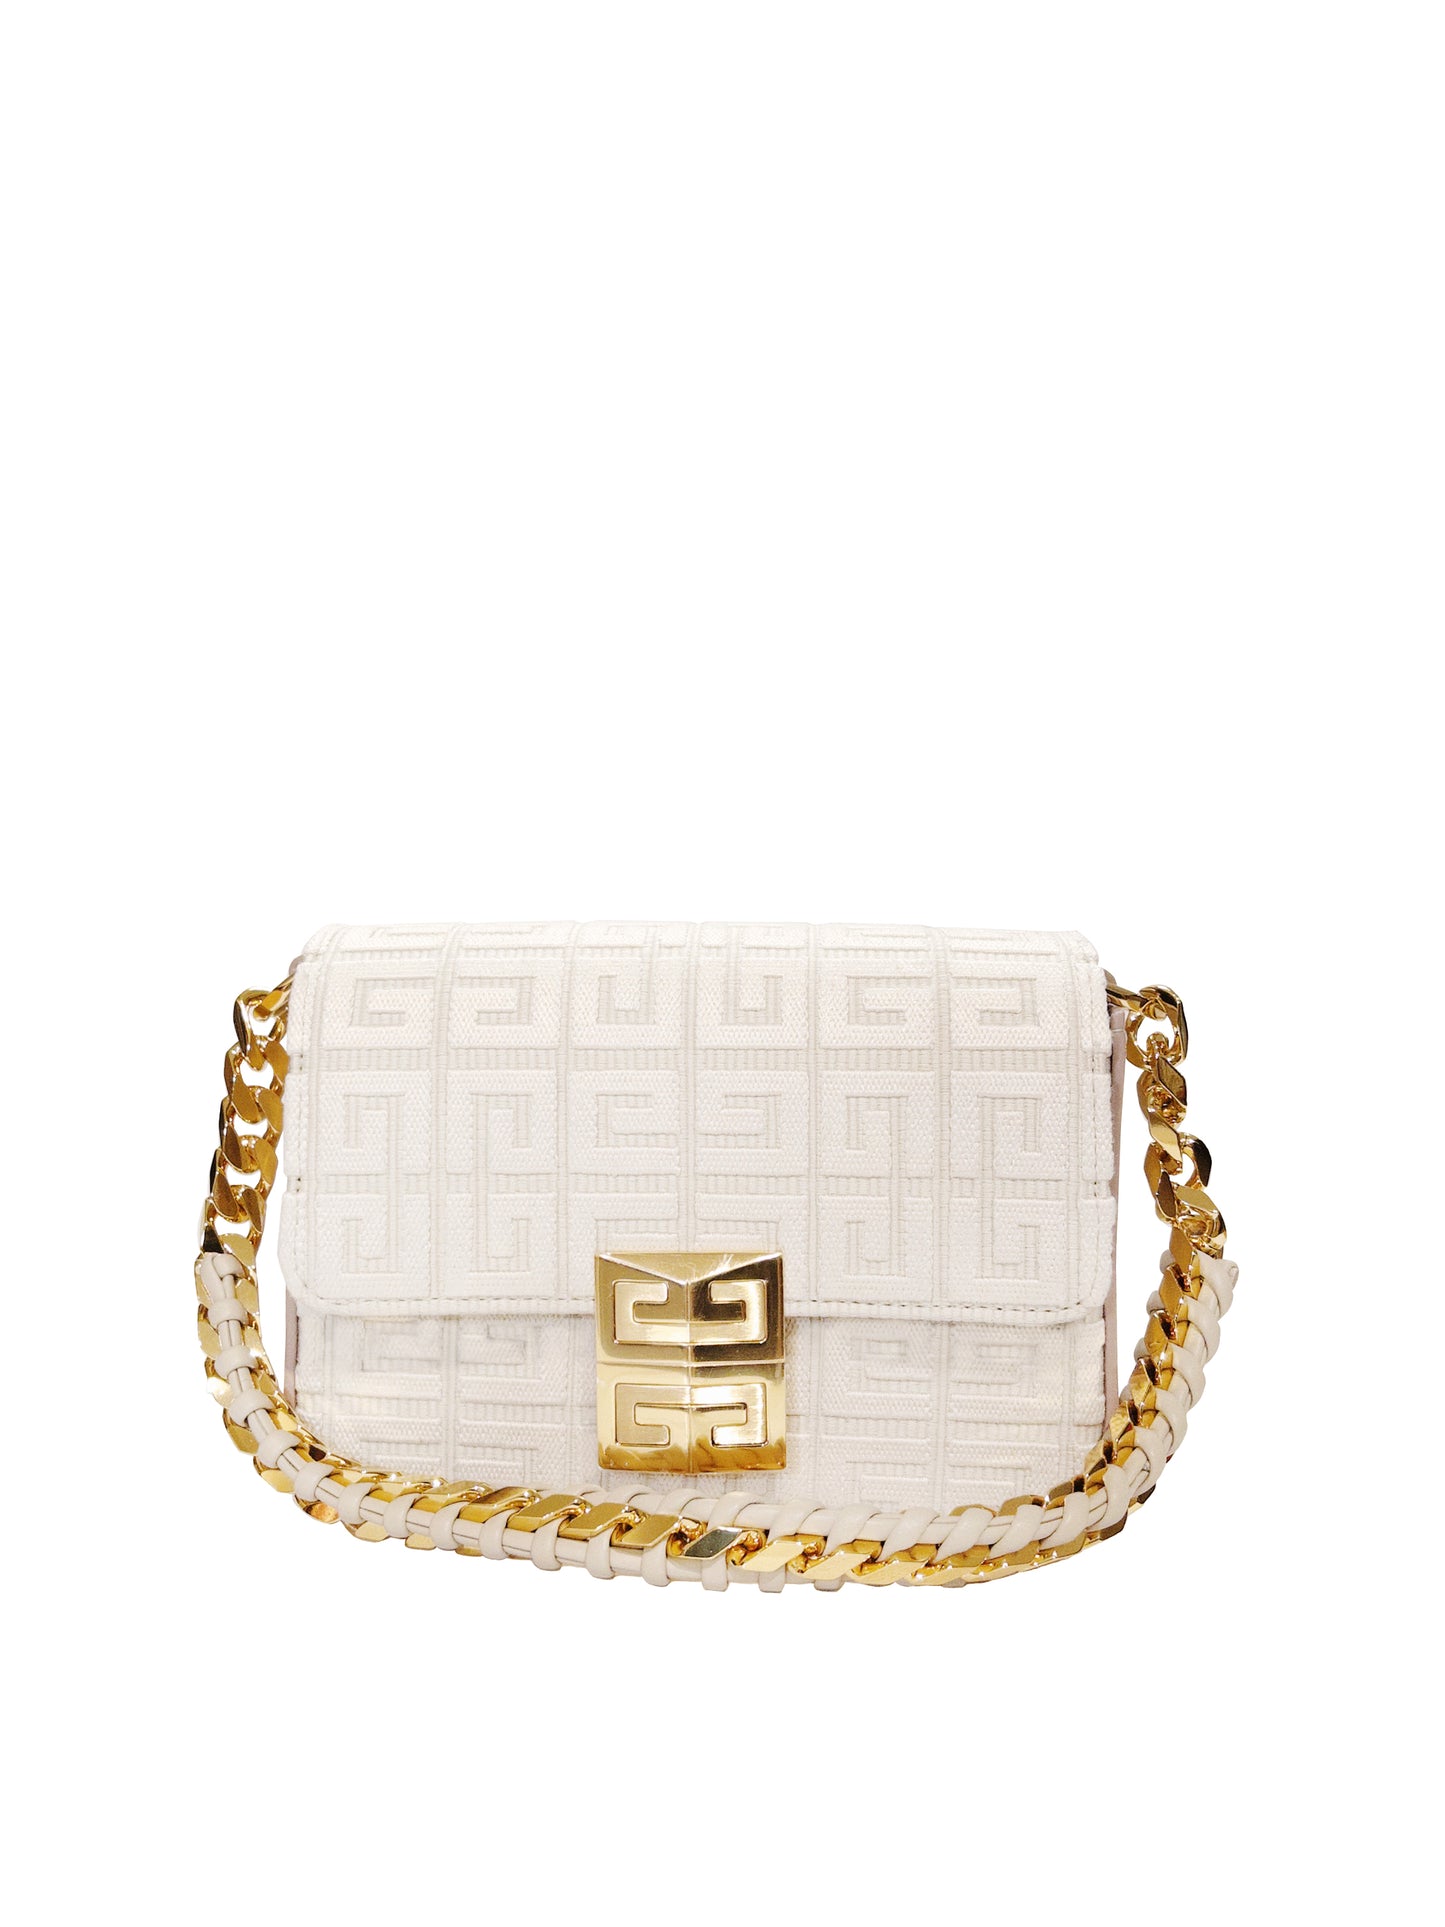 Naturweiße Tasche der Marke Givenchy aus Canvas-Material, mit G-Details, goldener Kette und Ledermix.